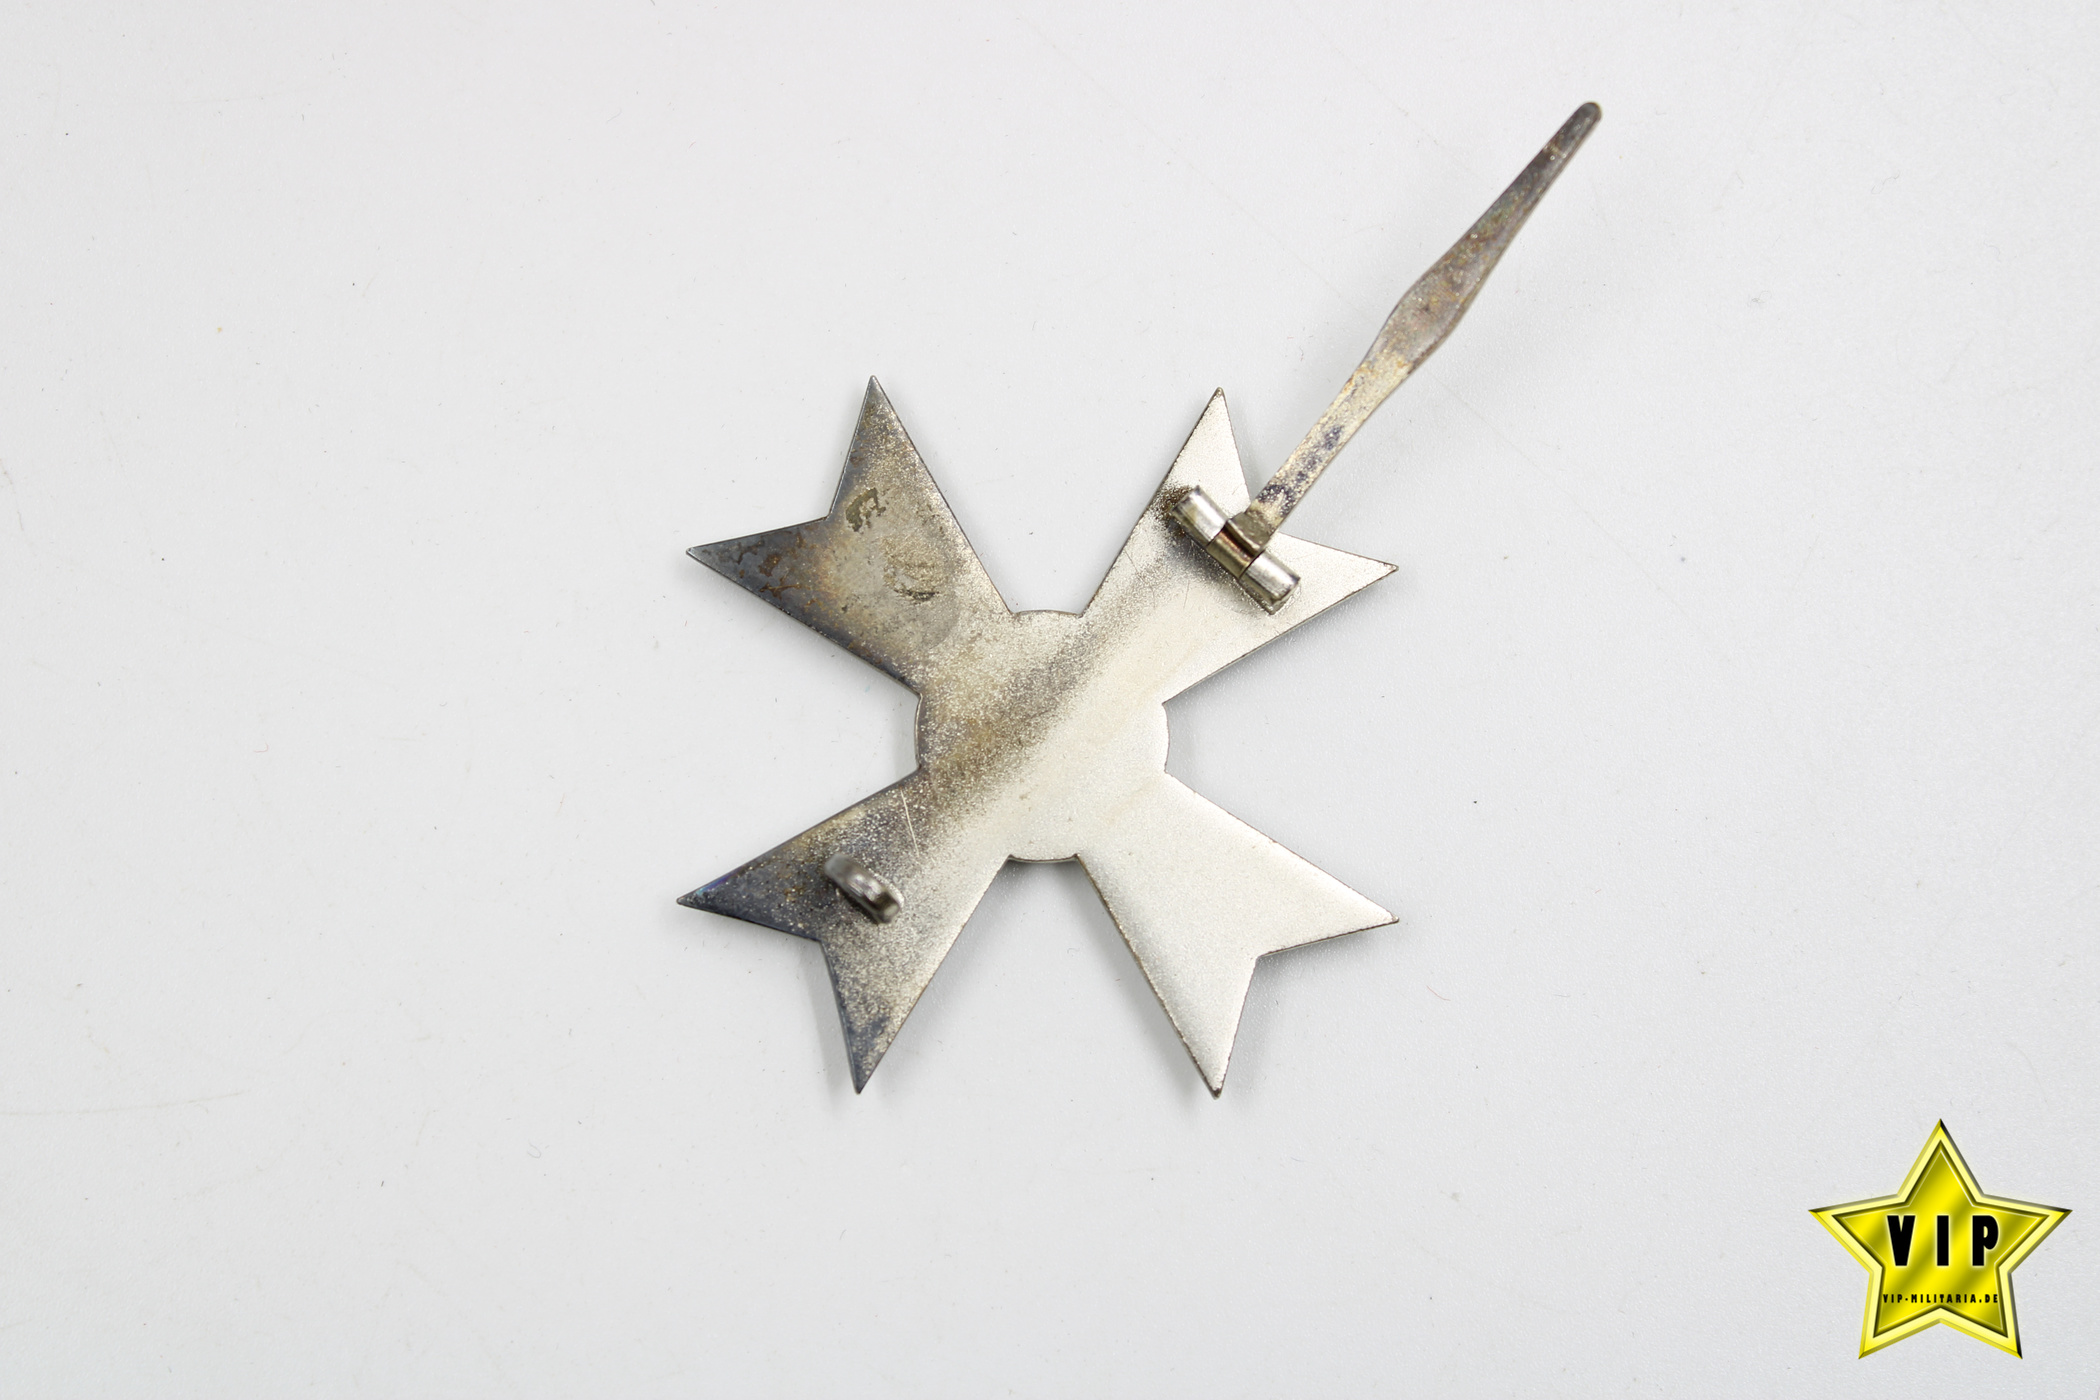 Kriegsverdienstkreuz 1. Klasse ohne Schwerter im Etui + Umkarton Hersteller 1 Deschler & Sohn, München + Miniatur